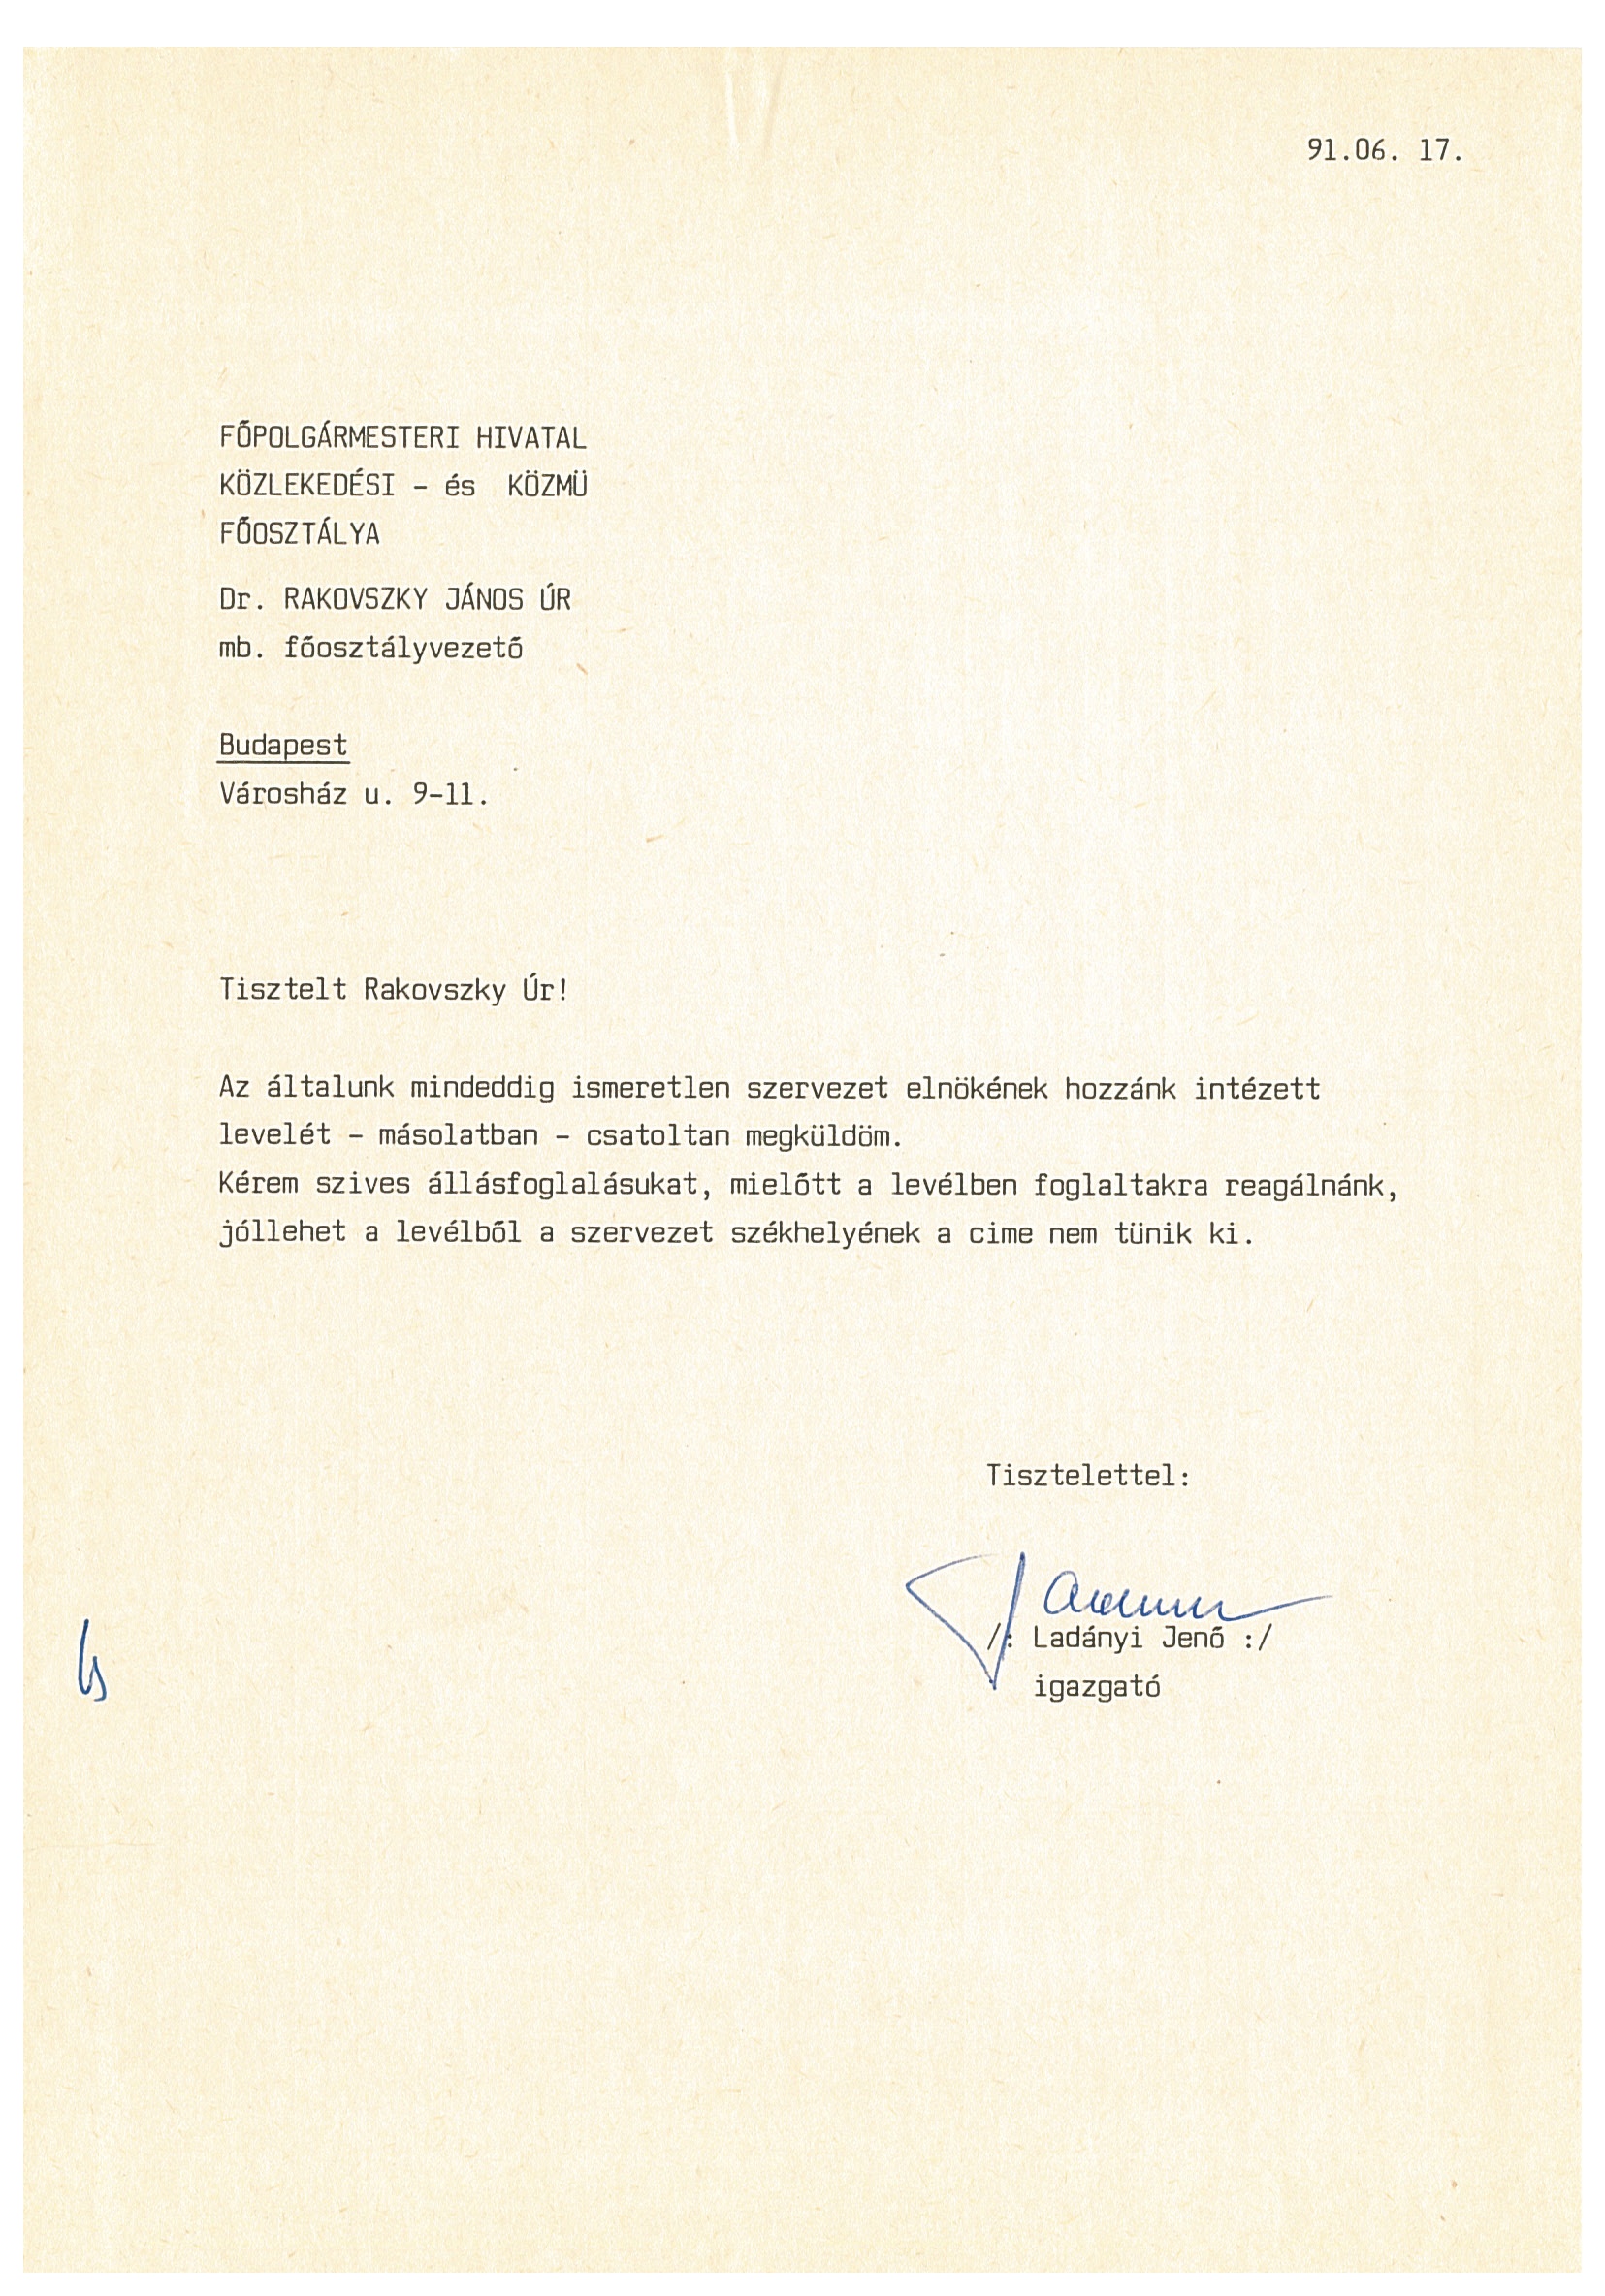 Ladányi Jenő levele a Főpolgármesteri Hivatalnak (Nemzeti Örökség Intézete – Kegyeleti Múzeum CC BY-NC-SA)